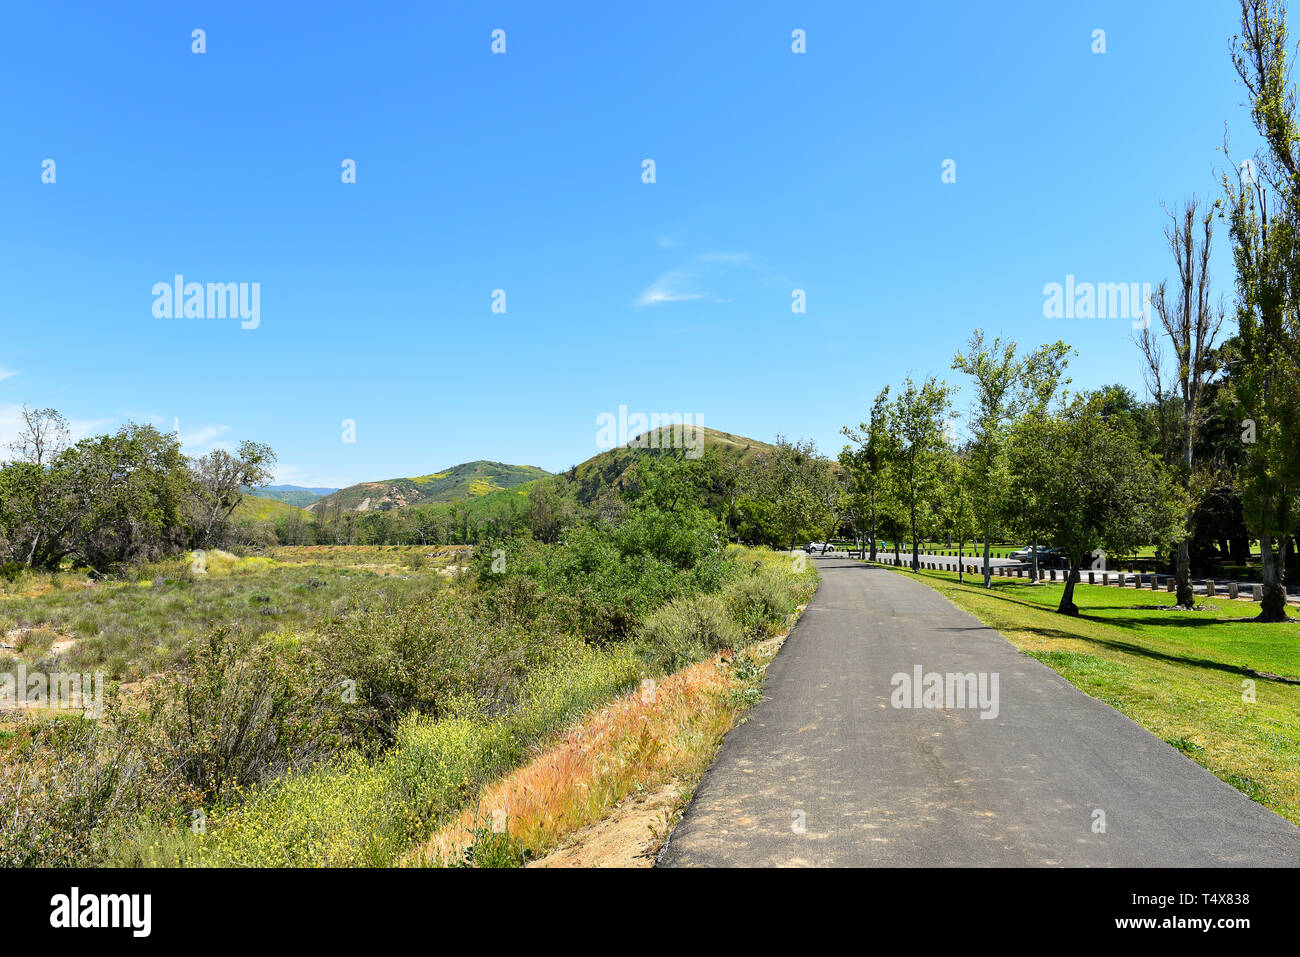 ORANGE, Kalifornien - 18. APRIL 2019: Radweg in Irvine Regional Park in Orange County, Kalifornien. Stockfoto